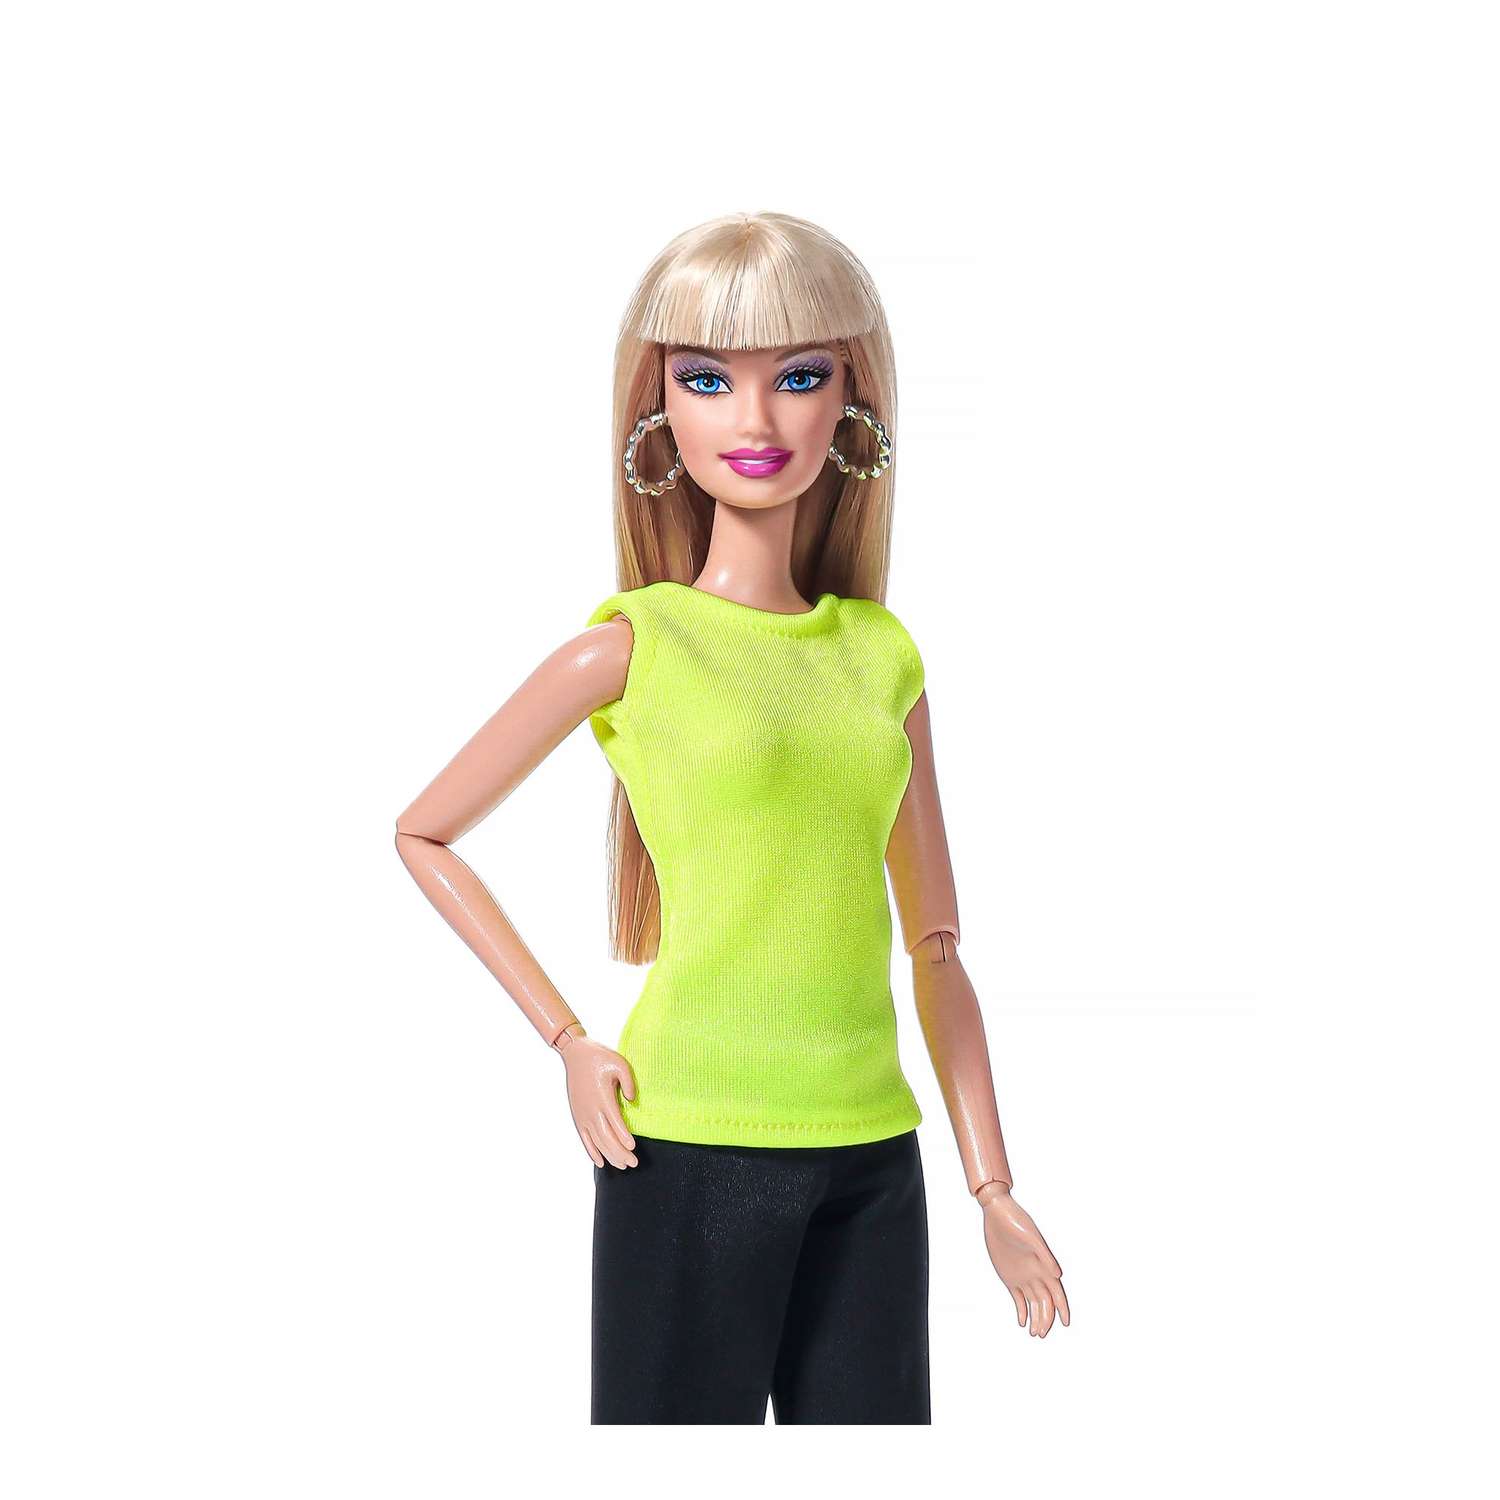 HHF80 Модный летний набор одежды Barbie Extra